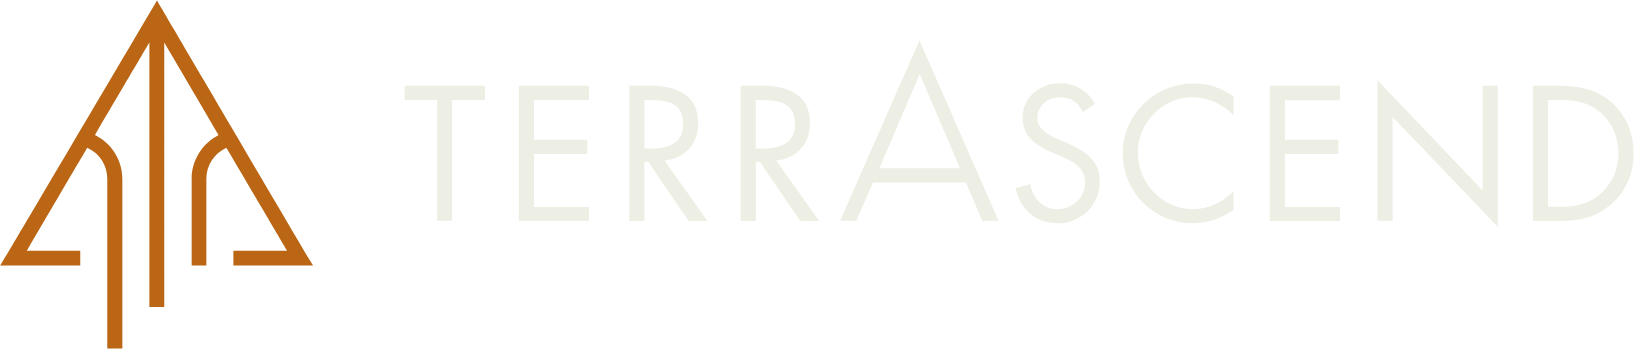 TerrAscend logo large for dark backgrounds (transparent PNG)